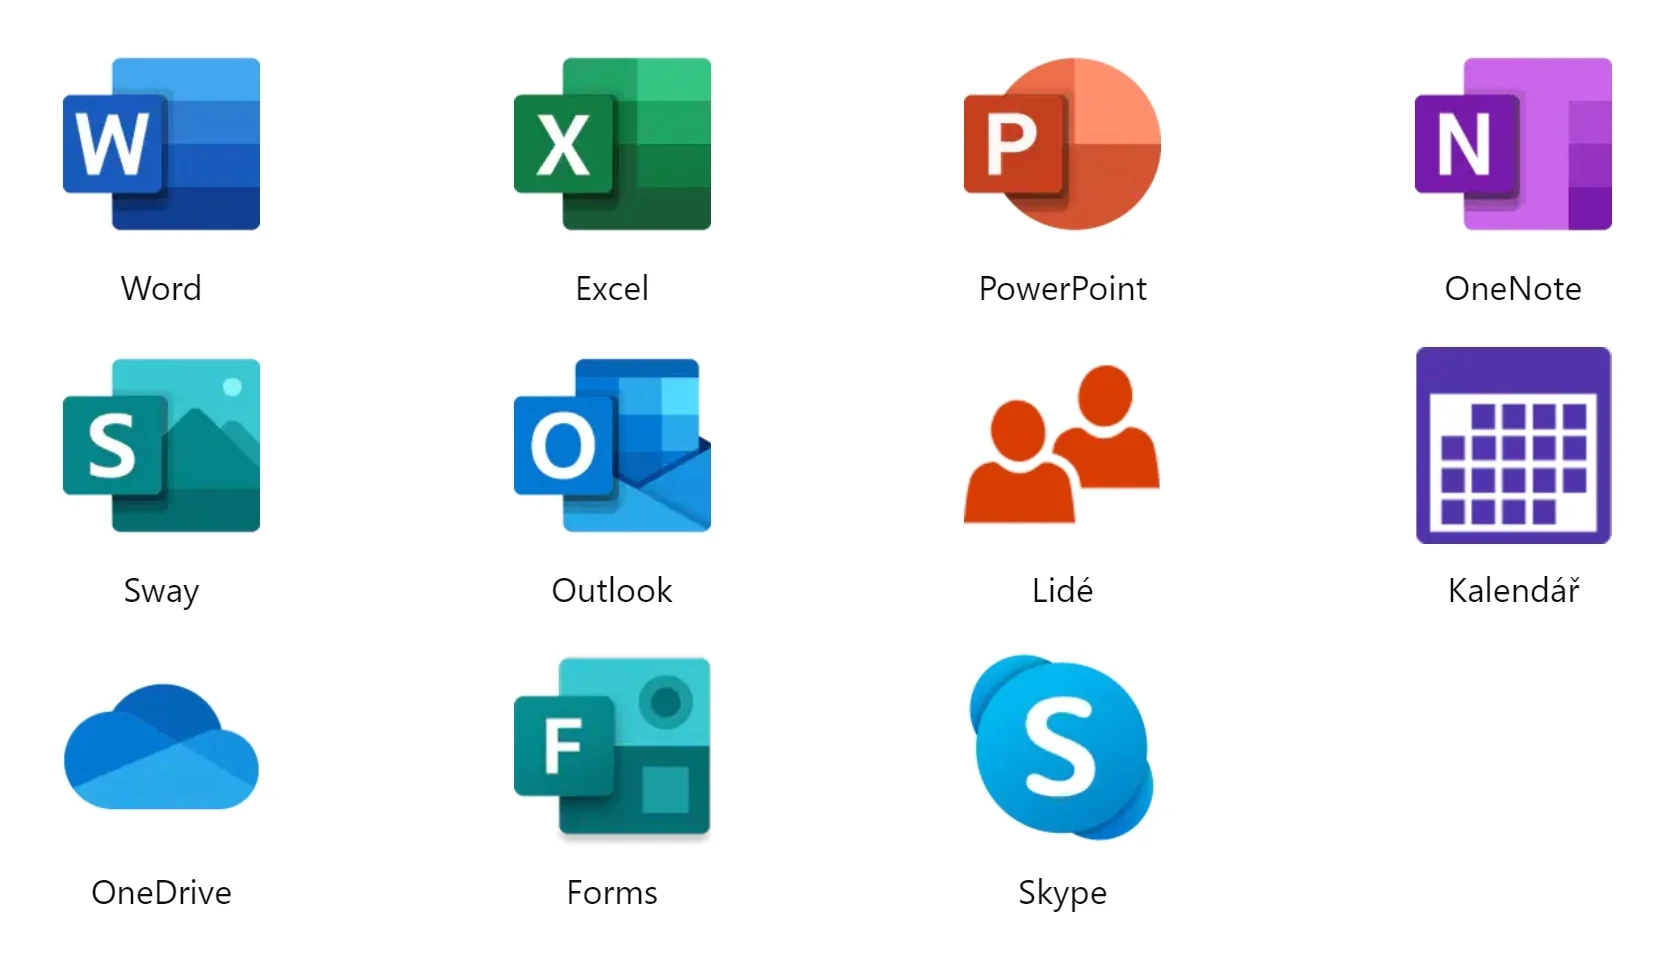 Seznam aplikací dostupných v online prostředí Microsoft Office